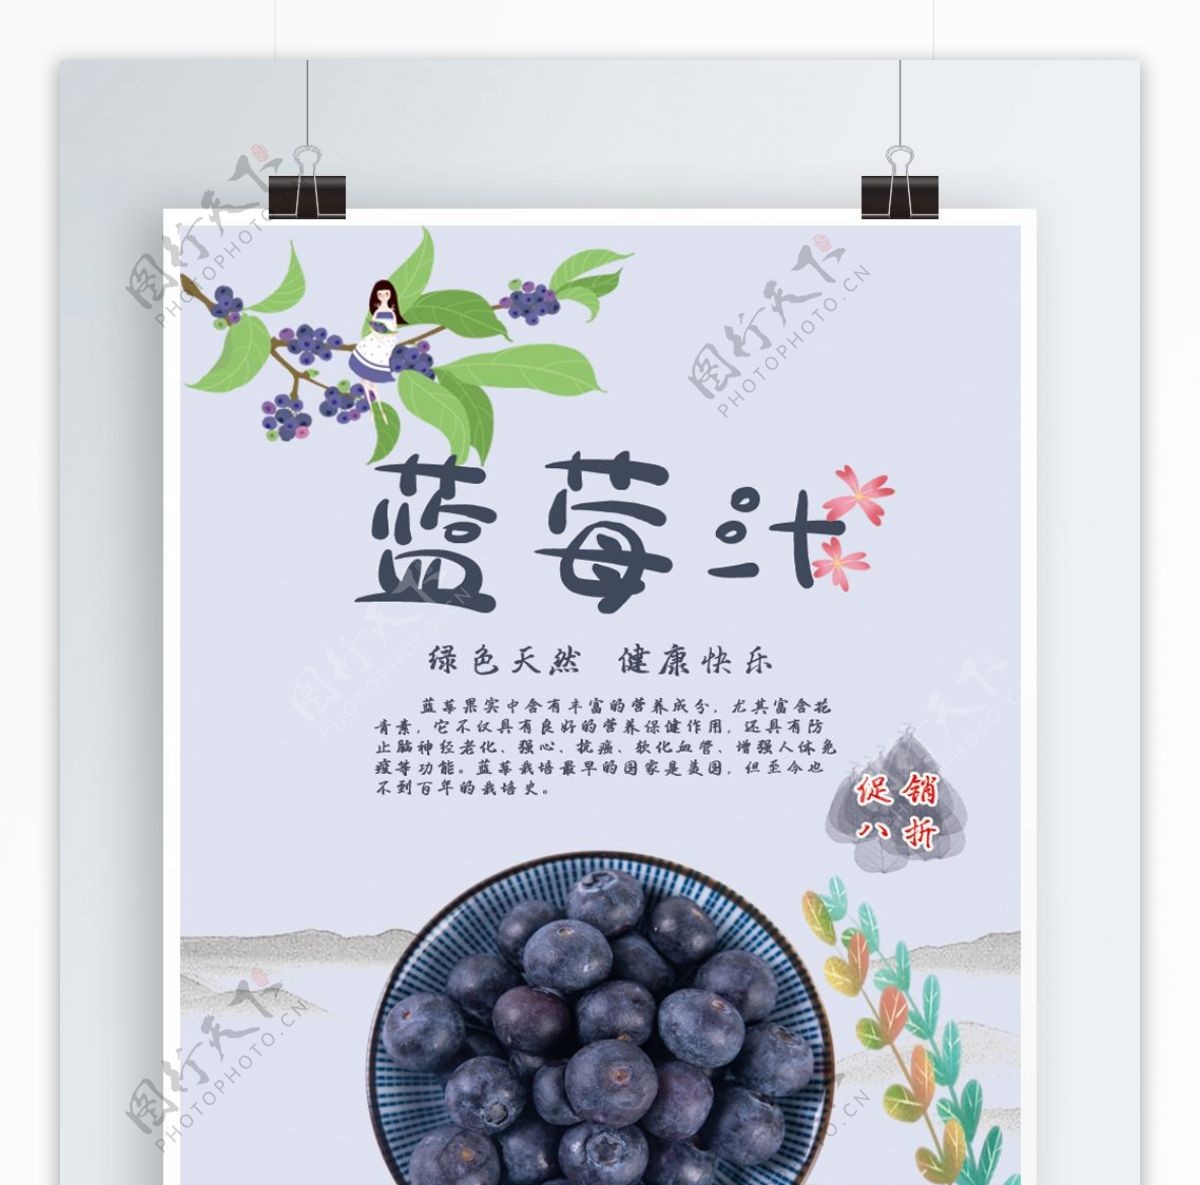 水果蓝莓促销海报